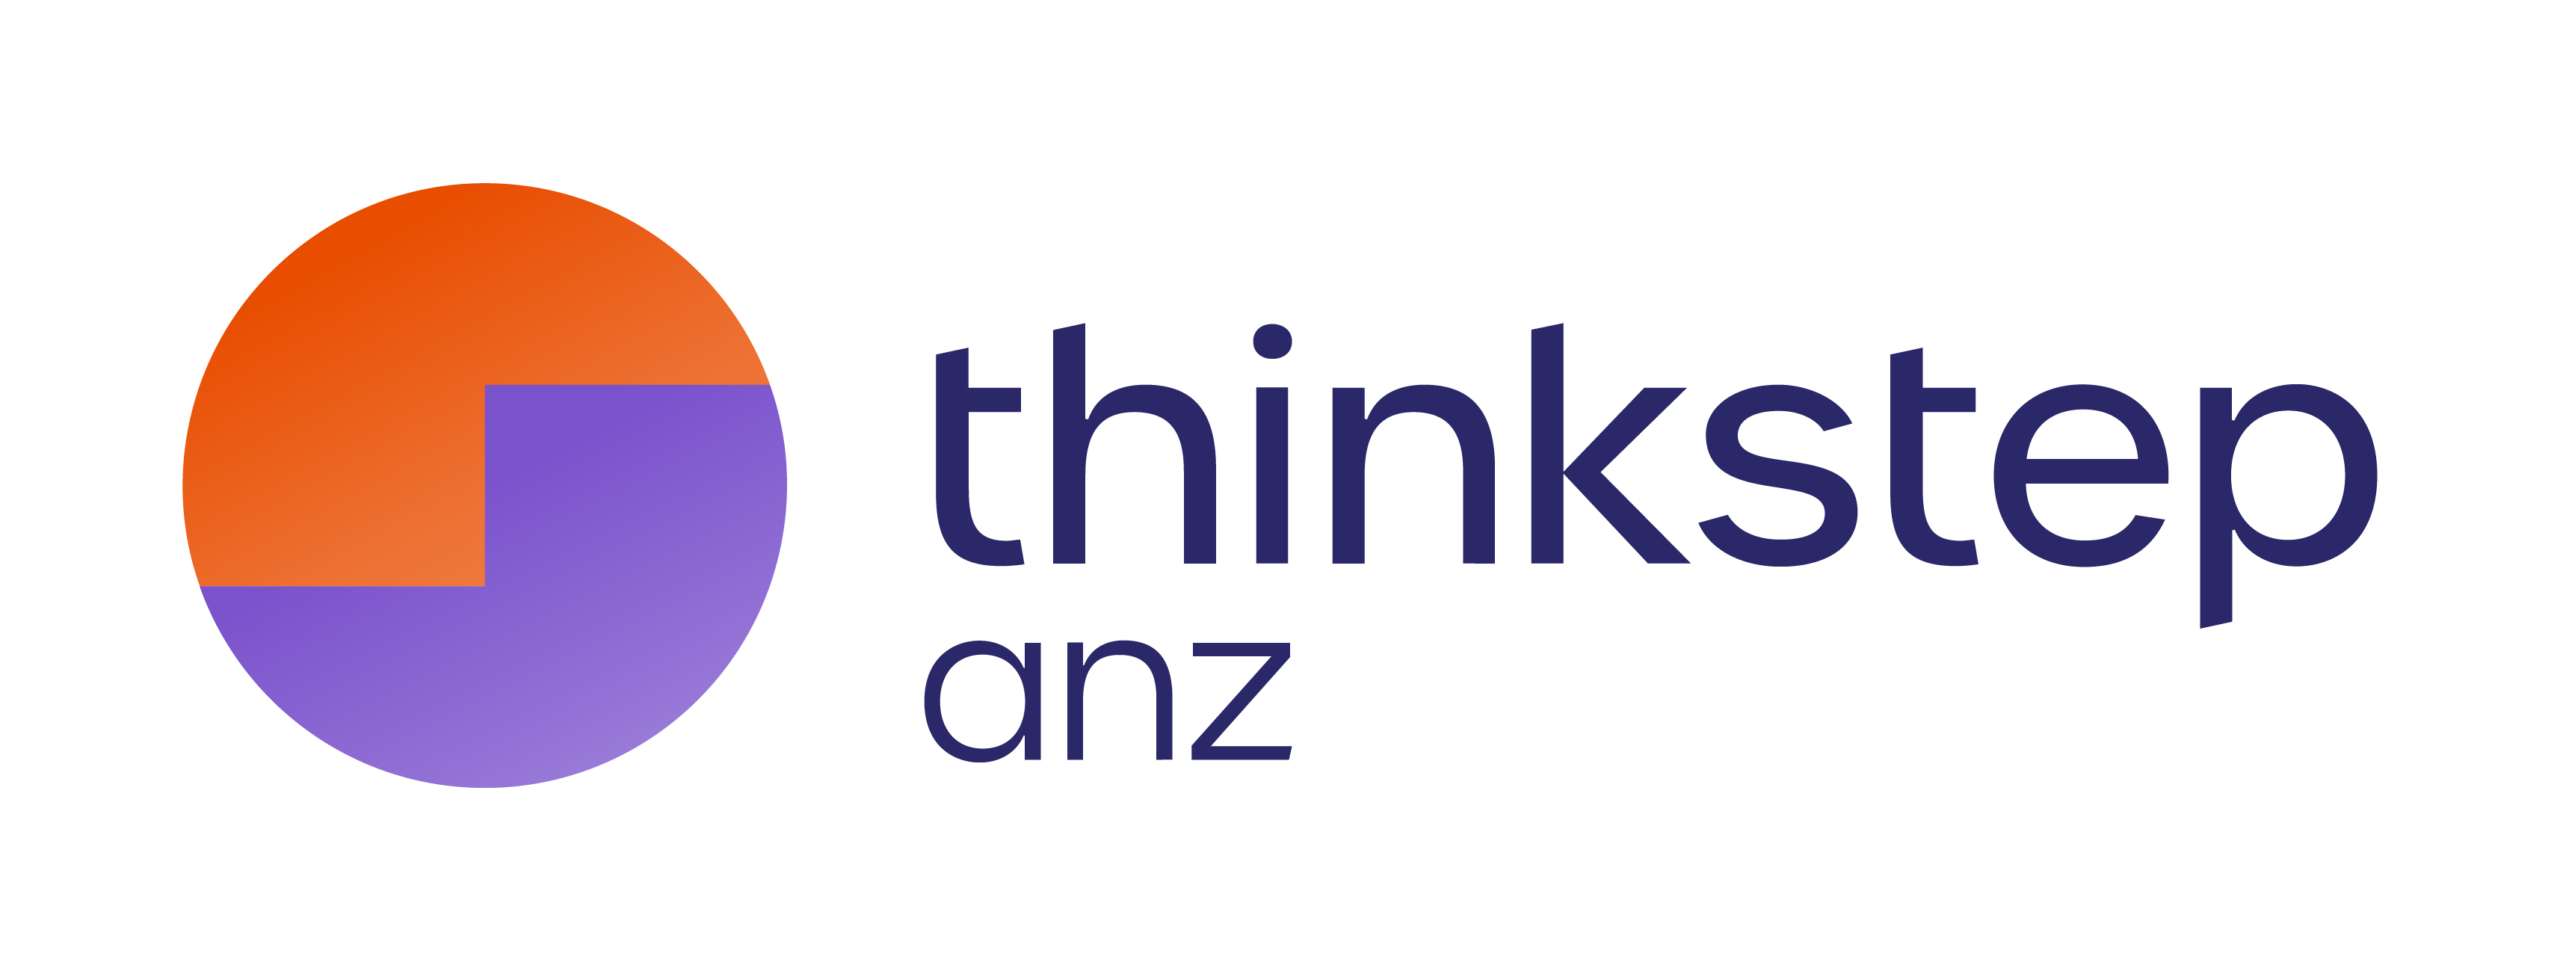 SIP NZ thinkstep anz